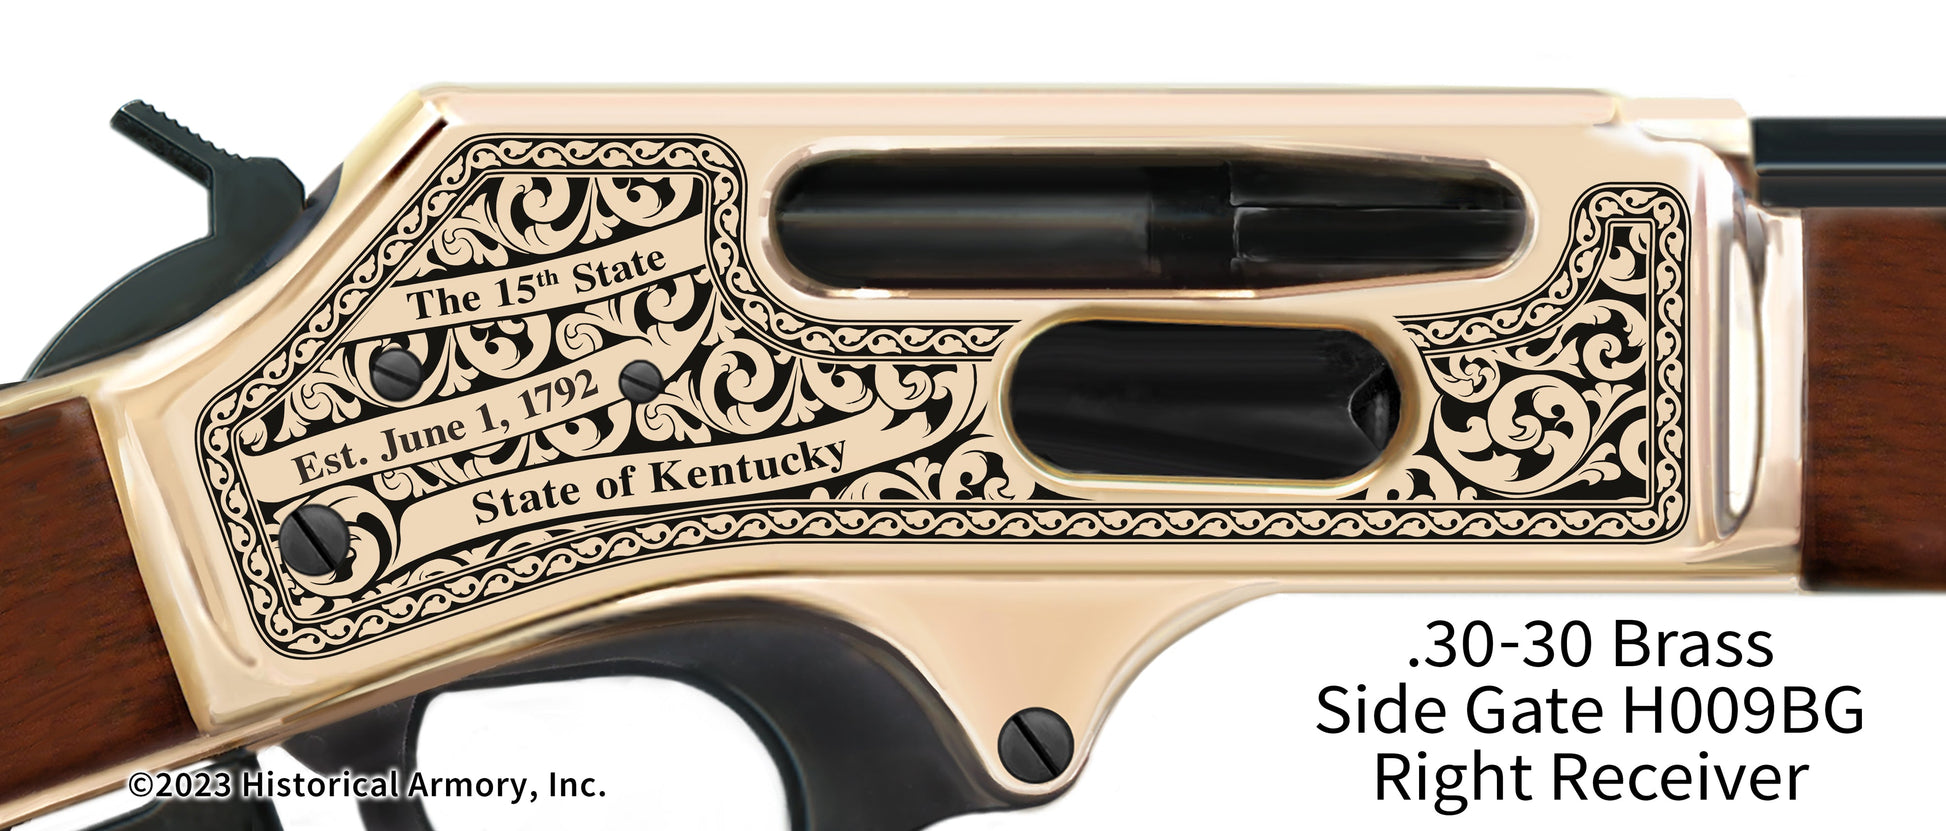 Bullitt County Kentucky Engraved Henry .30-30 Brass Side Gate Rifle